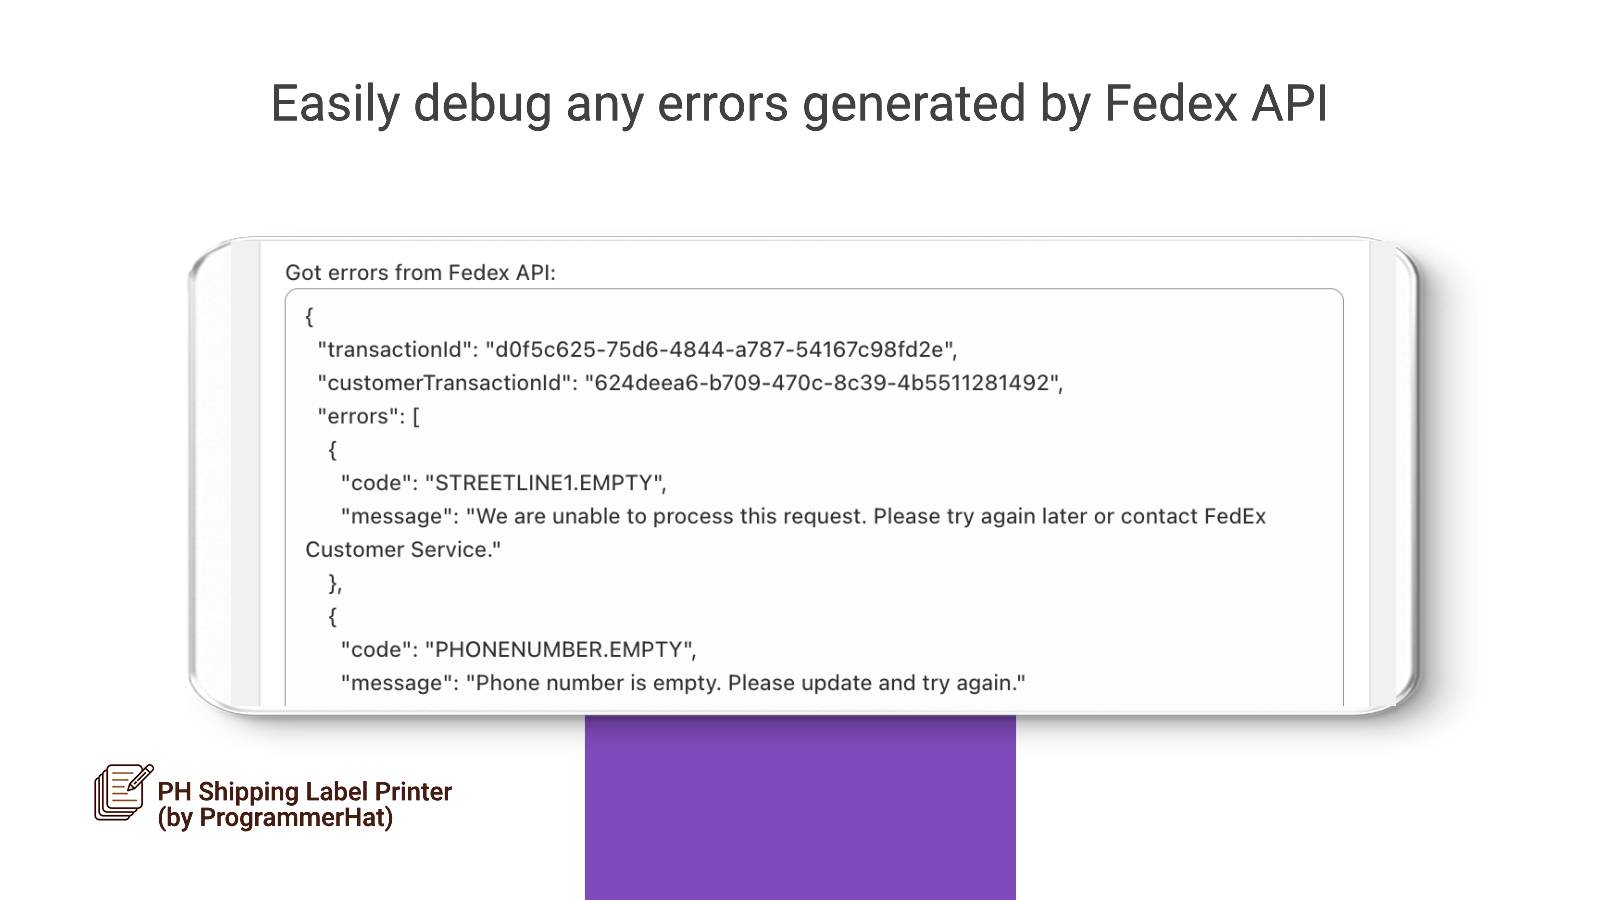 Felsök enkelt eventuella fel som returneras av Fedex API.